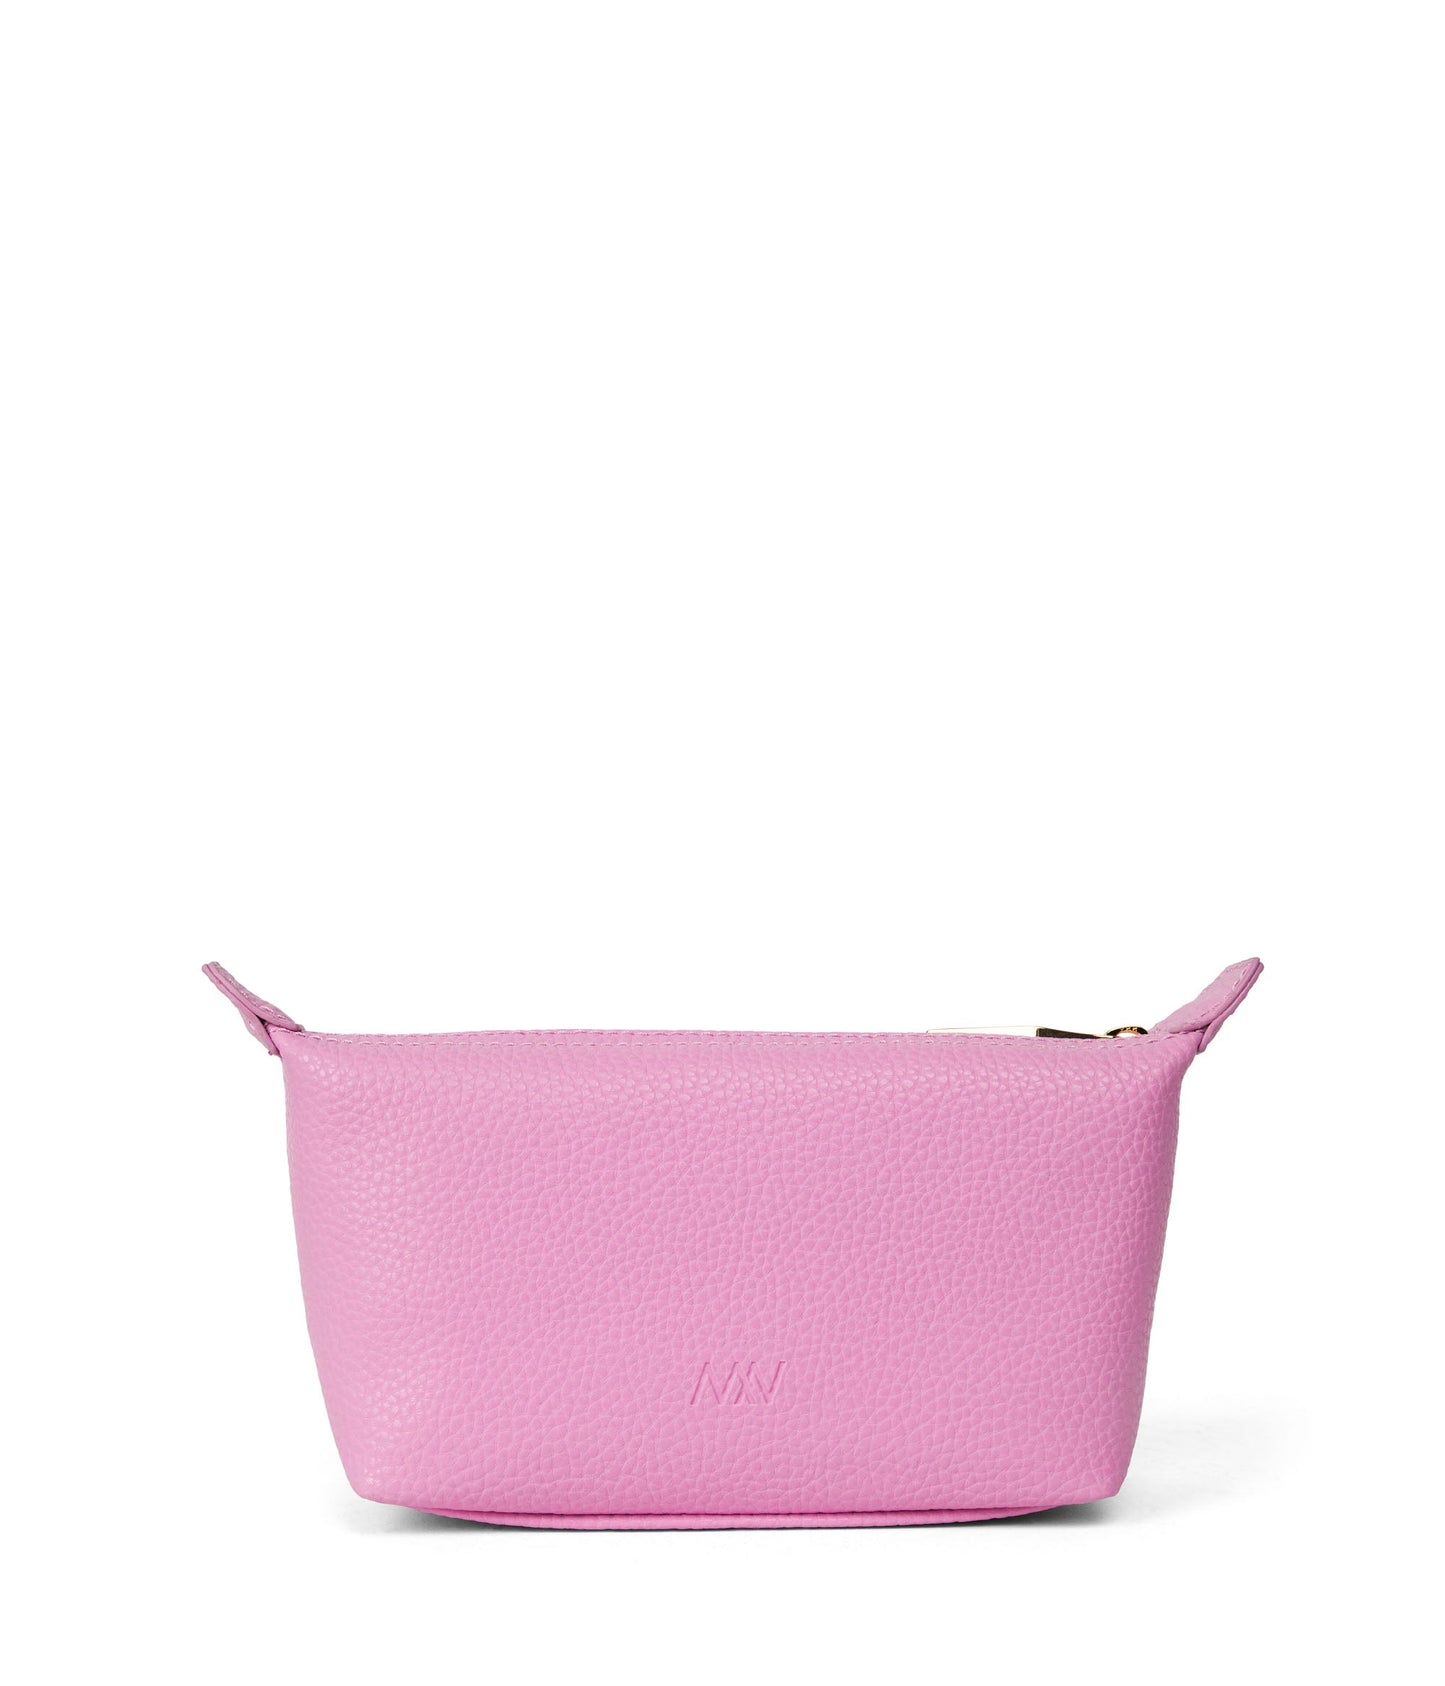 ABBI MINI Vegan Cosmetic Bag - Purity | Color: Pink - variant::flora